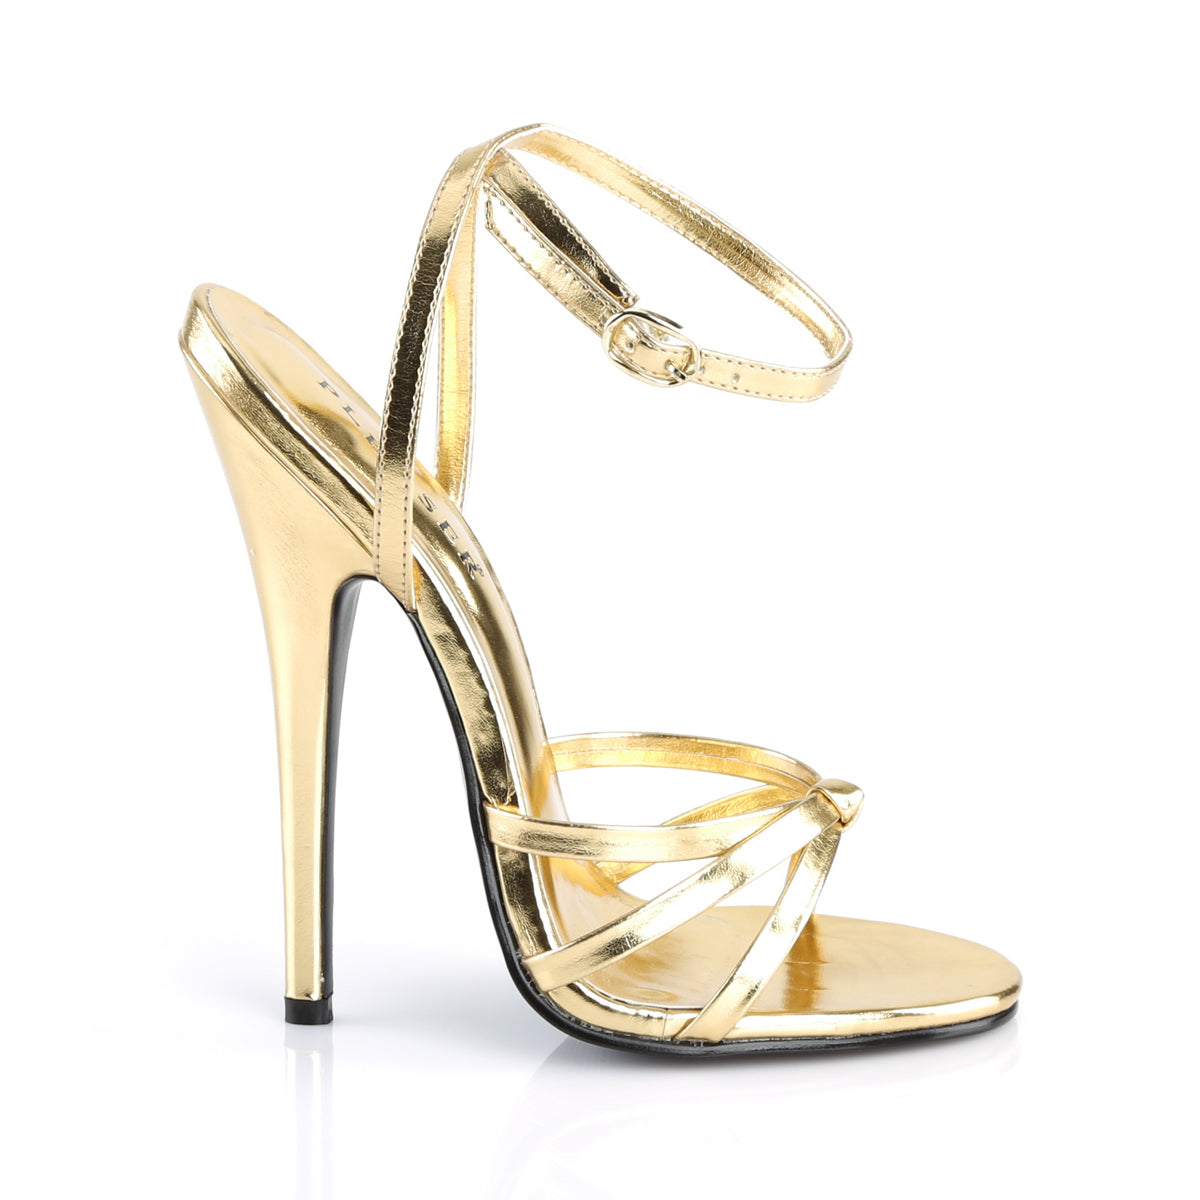 Devious Sandales pour femmes DOMINA-108 PU métallique en or